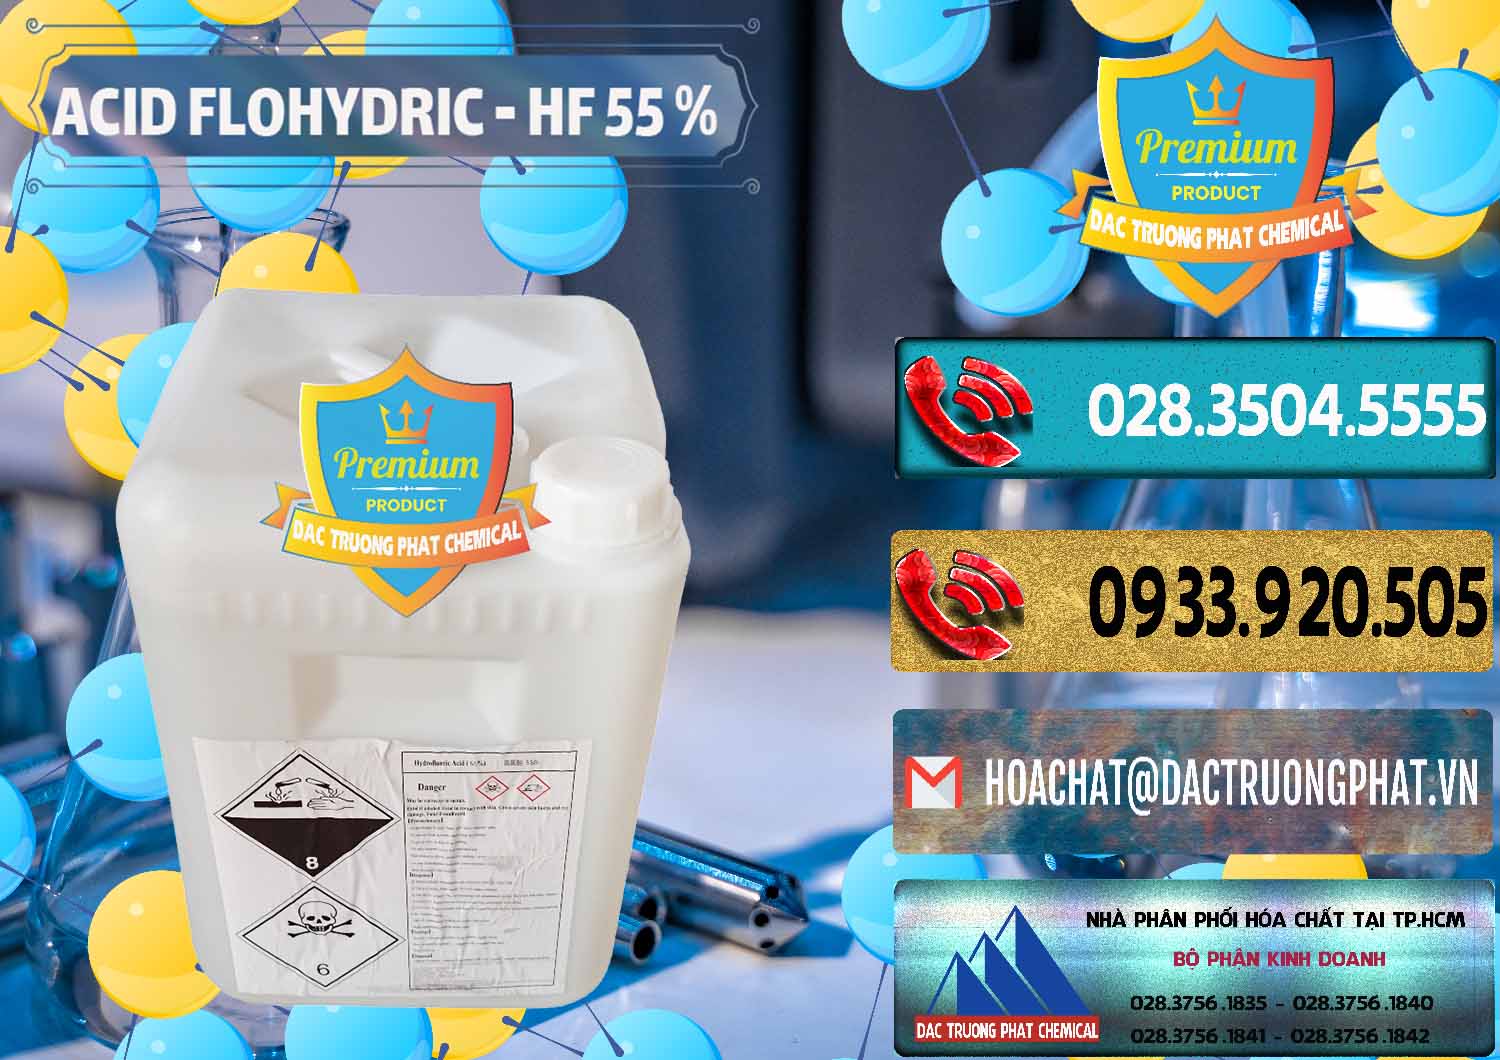 Cty chuyên cung cấp _ bán Axit HF - Acid HF 55% Can Trắng Trung Quốc China - 0079 - Nơi cung ứng - phân phối hóa chất tại TP.HCM - hoachatdetnhuom.com